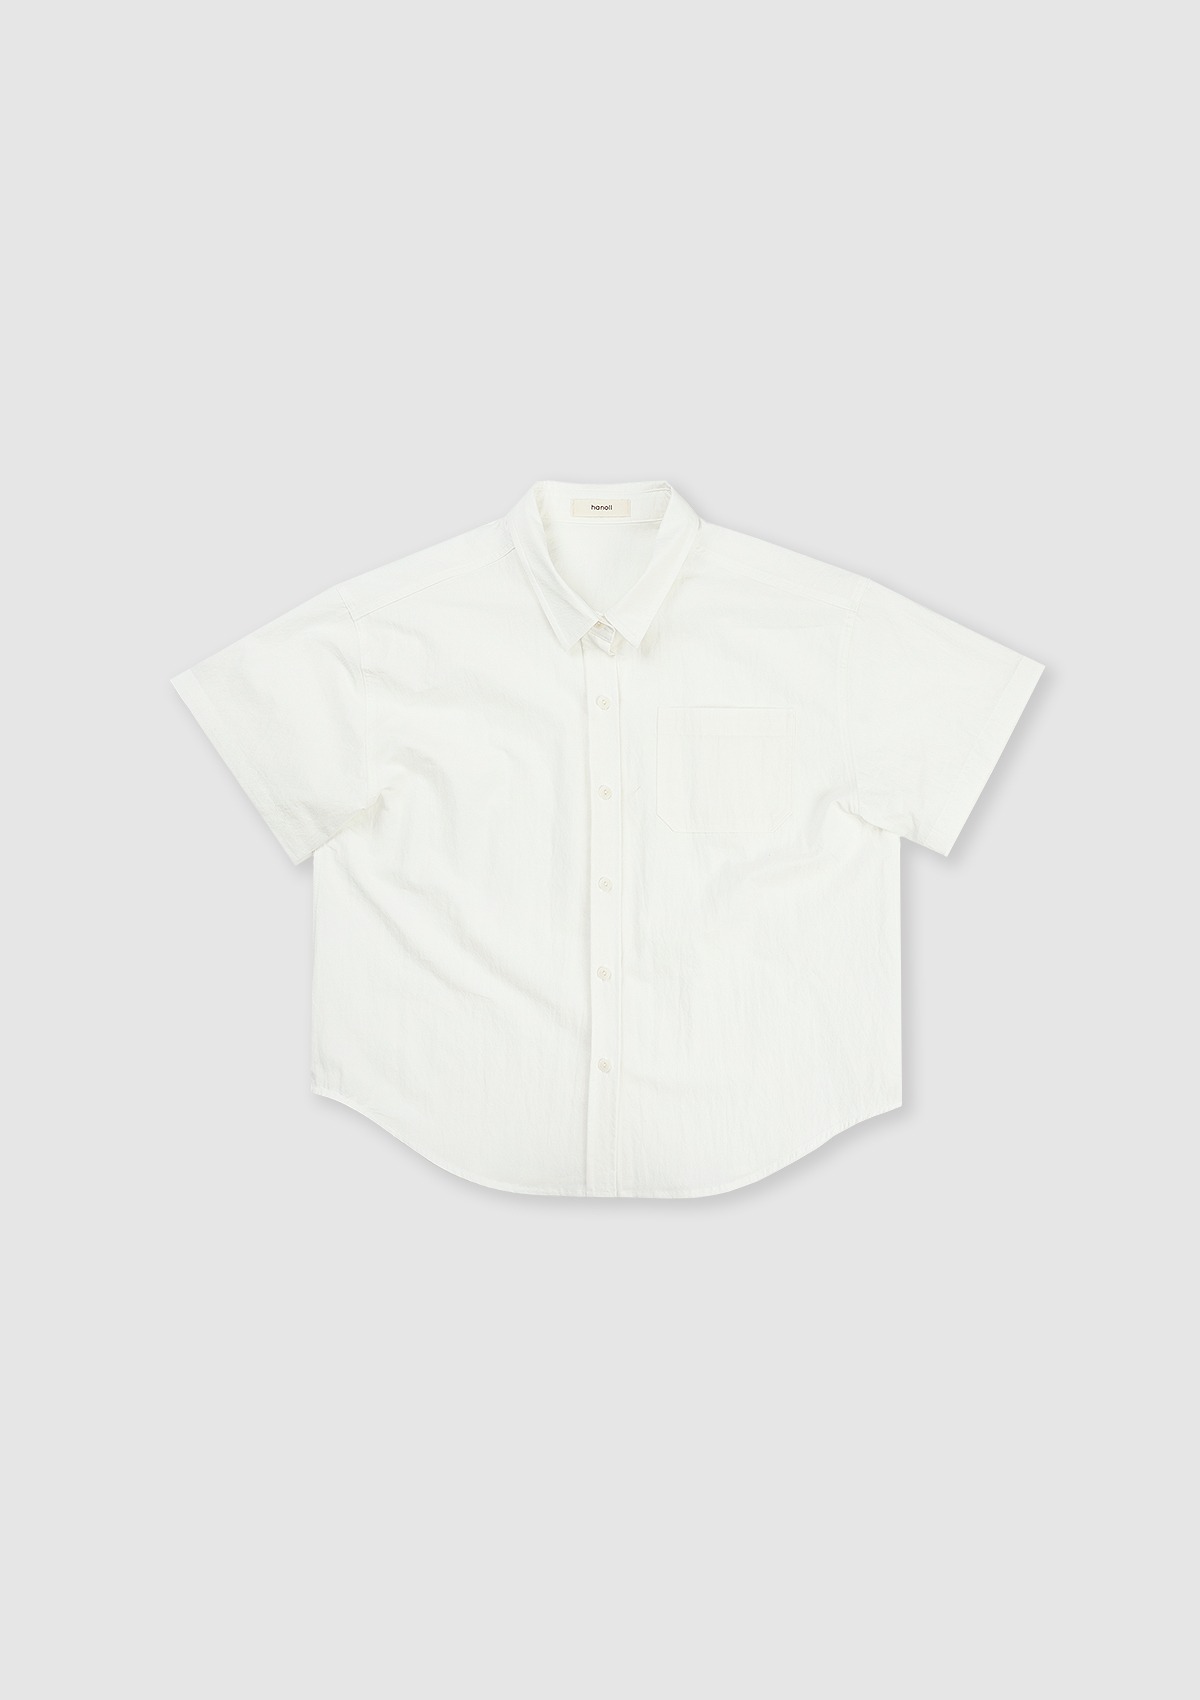 Ronnie shirt (White)